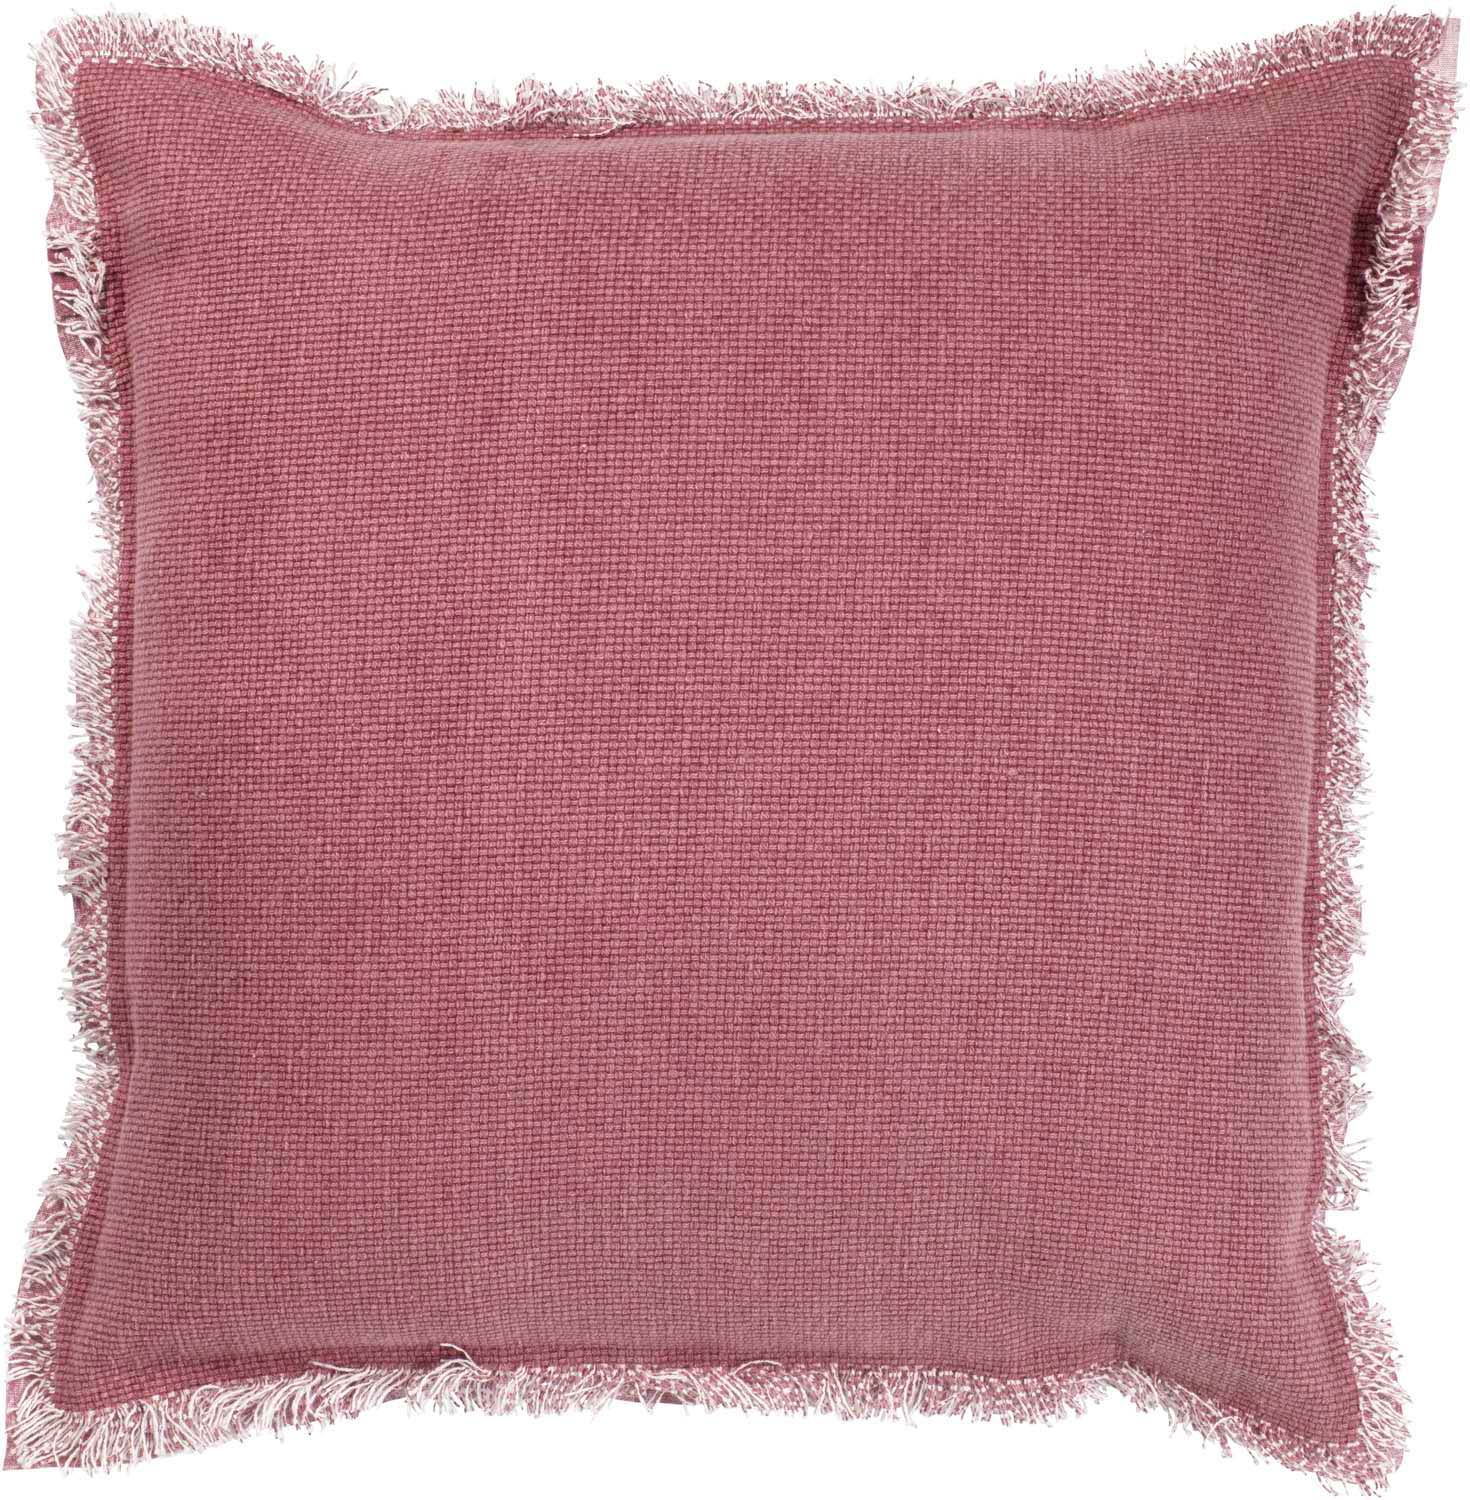 BURTO - Sierkussen XL - 70x70 cm - pruim  - roze - gewassen katoen - lounge kussen